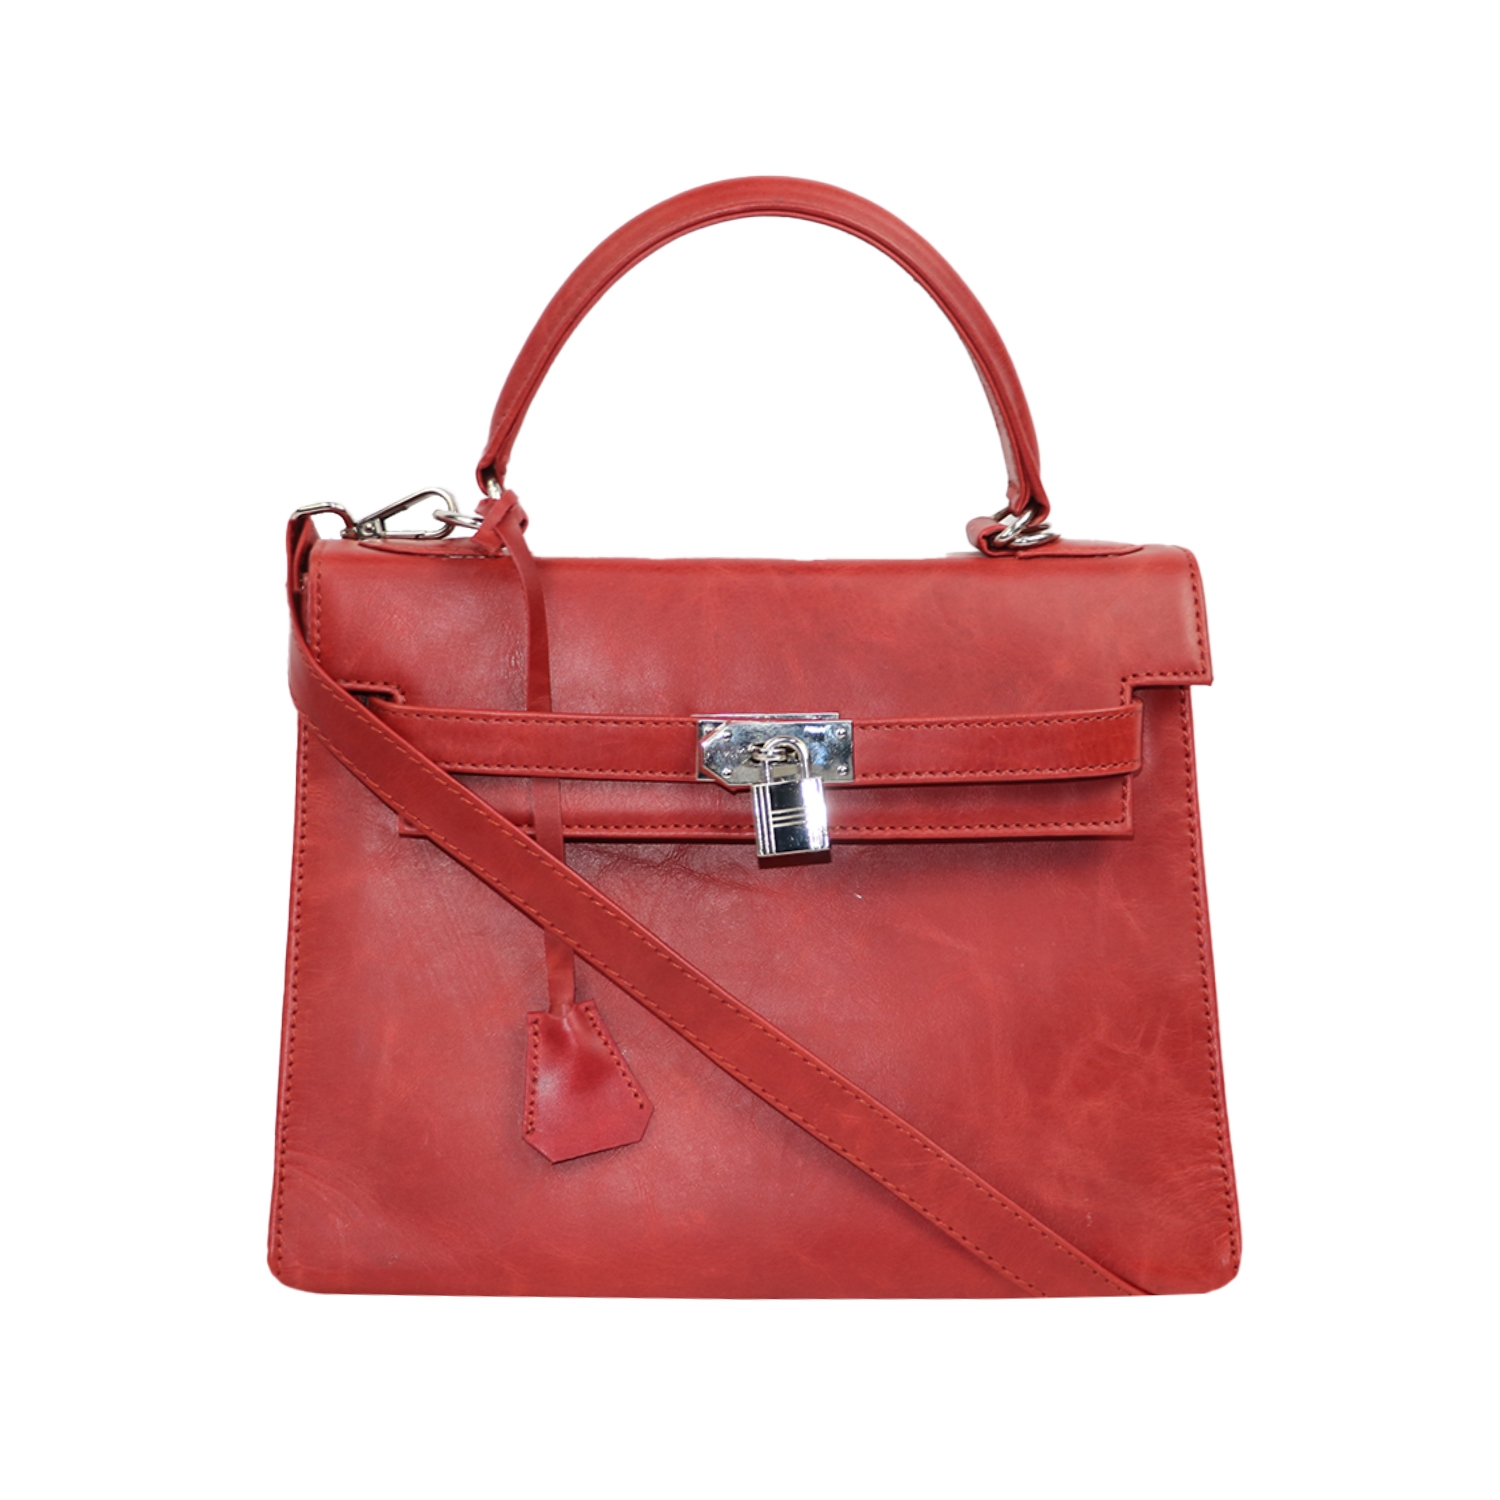 EMM | Designer red cute handbag with unique lock